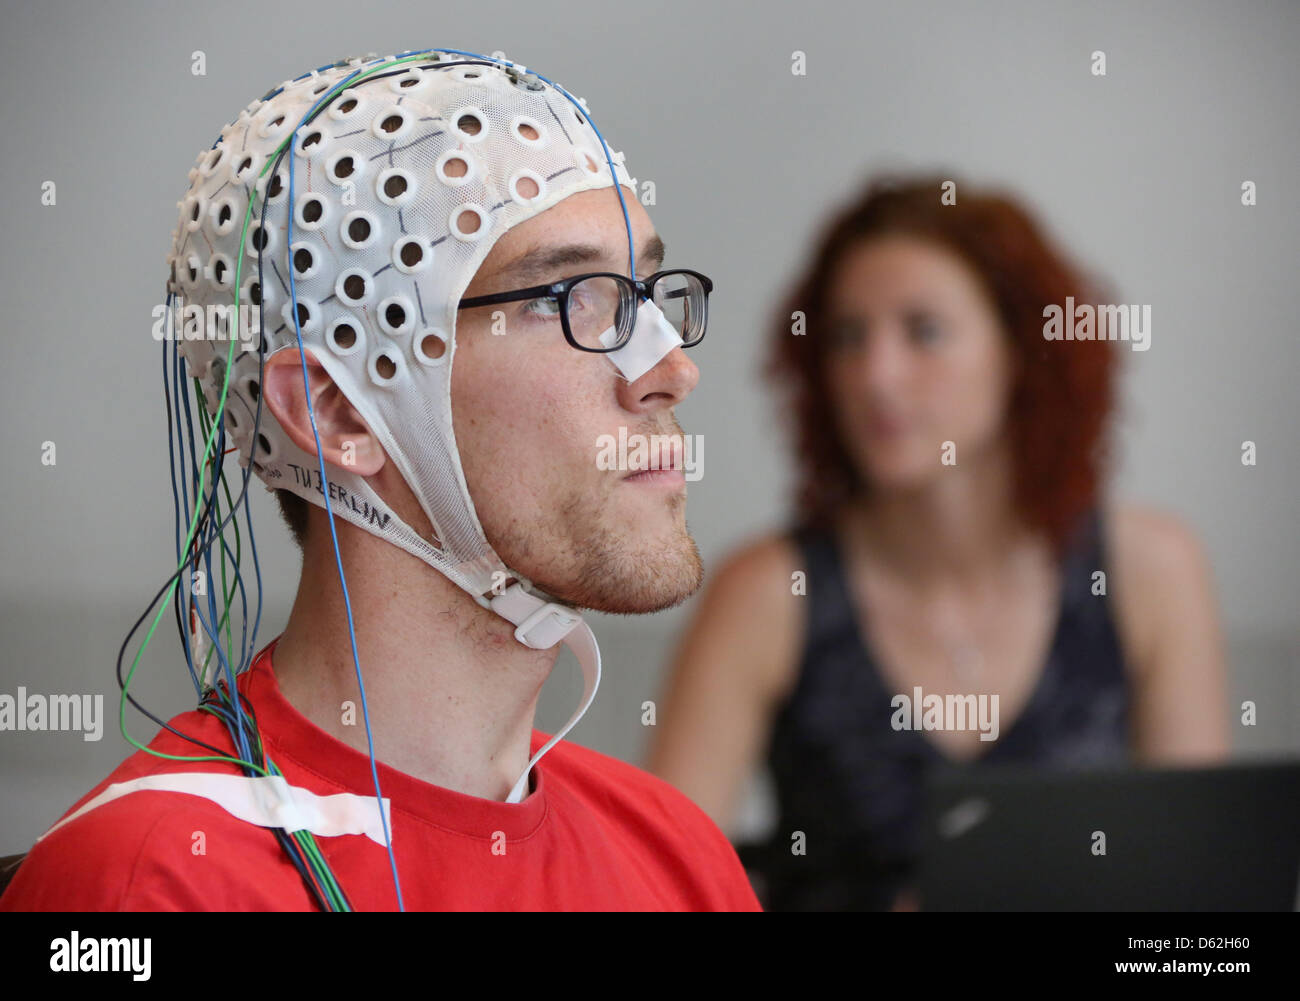 Sven Daehne gioca a scacchi con un cappuccio EEG (elettroencefalografo) presso l Università Tecnica di Berlino, Germania, 22 maggio 2012. Il segnale EEG le misure della PAC onde cerebrali che sono decodificati da un computer. La manifestazione ha avuto luogo per la prossima lunga notte della scienza. Foto: STEPHANIE PILICK Foto Stock